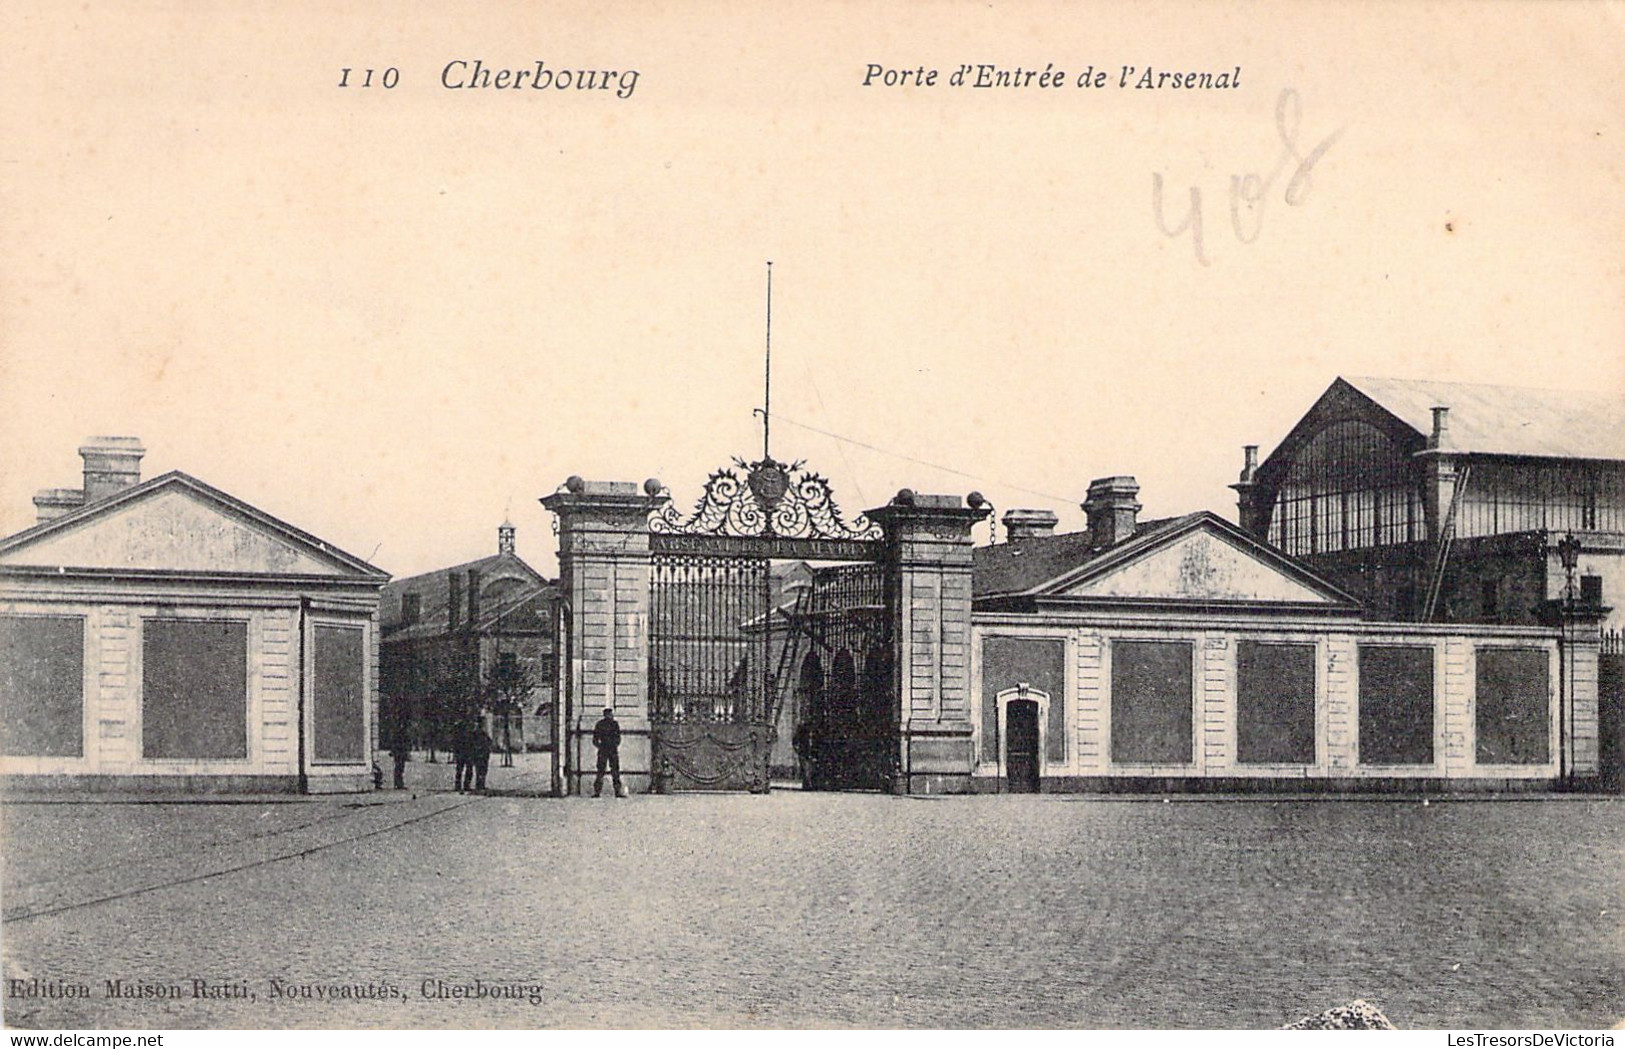 MILITARIA - CHERBOURG - Porte D'entrée De L'Arsenal - Edition Maison Ratti - Carte Postale Ancienne - Kazerne